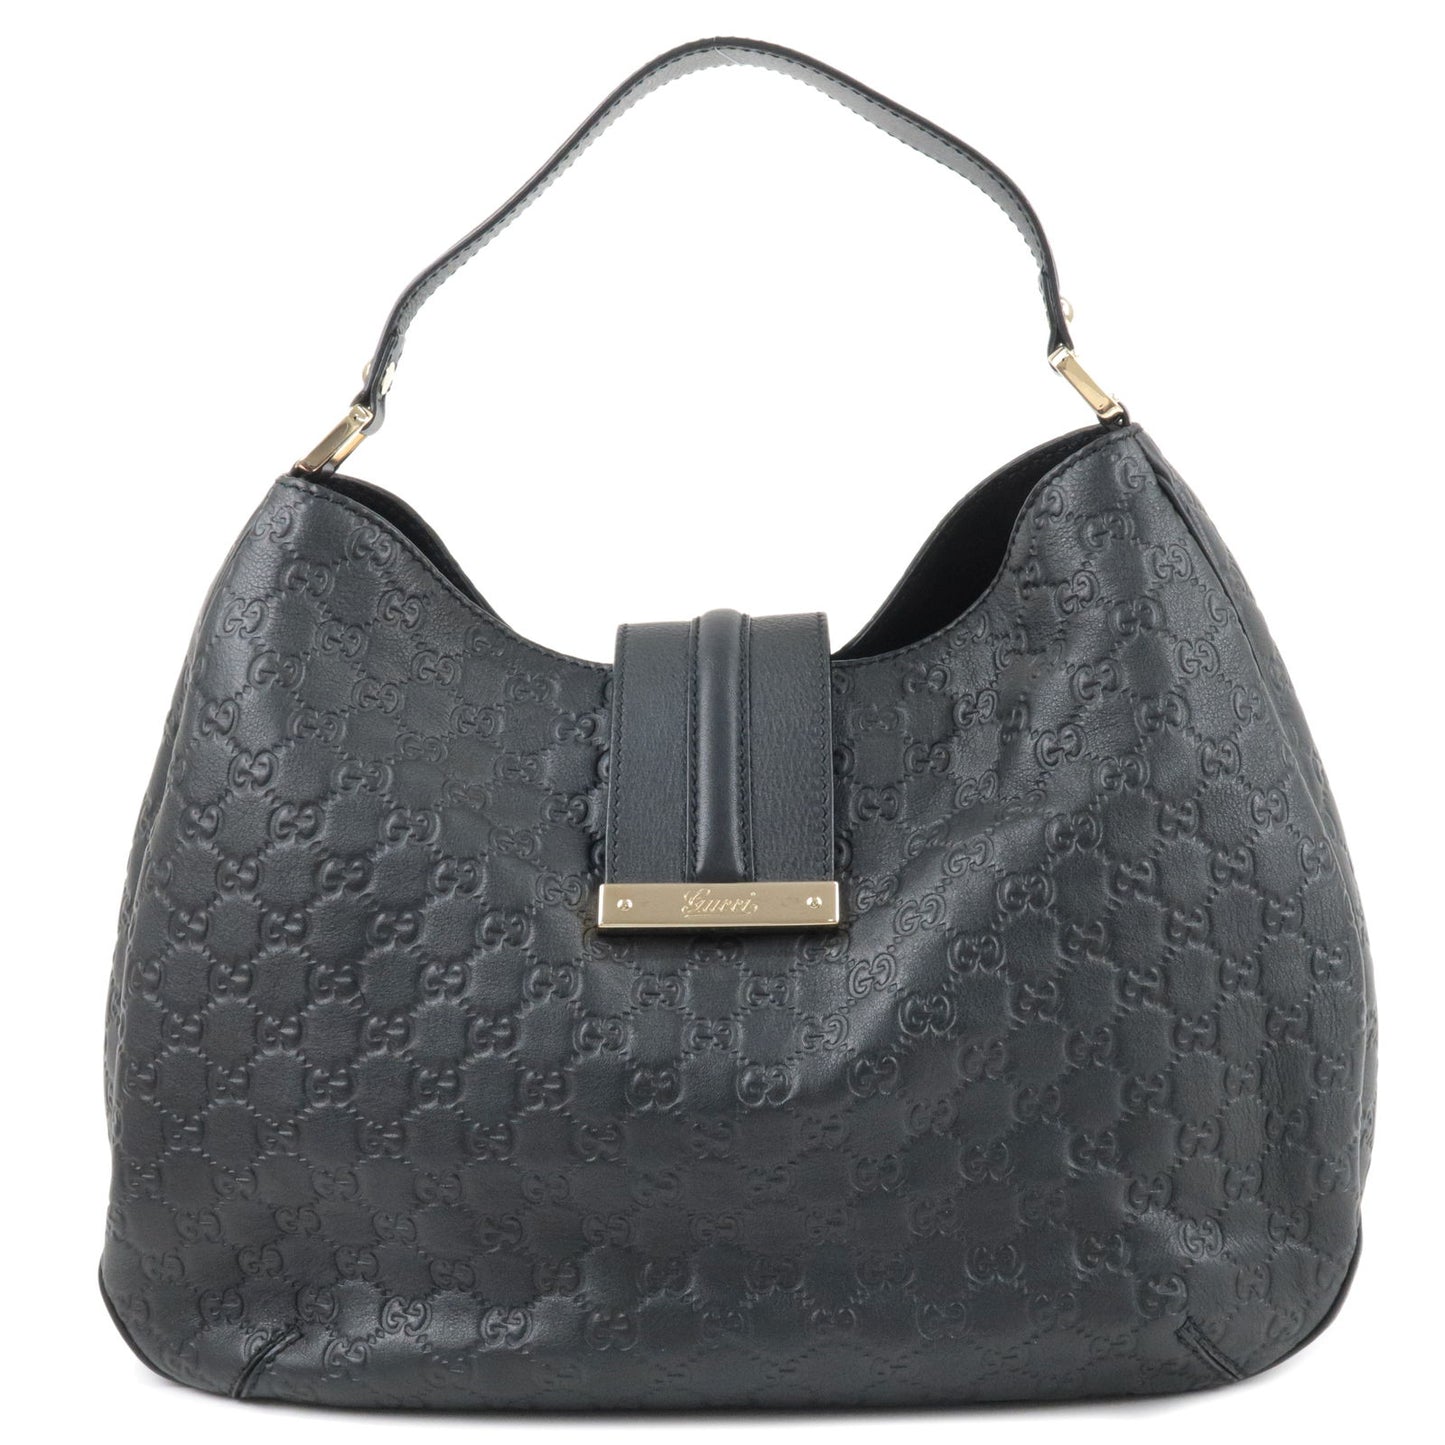 GUCCI-Guccissima-Leather-Shoulder-Bag-Hand-Bag-Black-364834